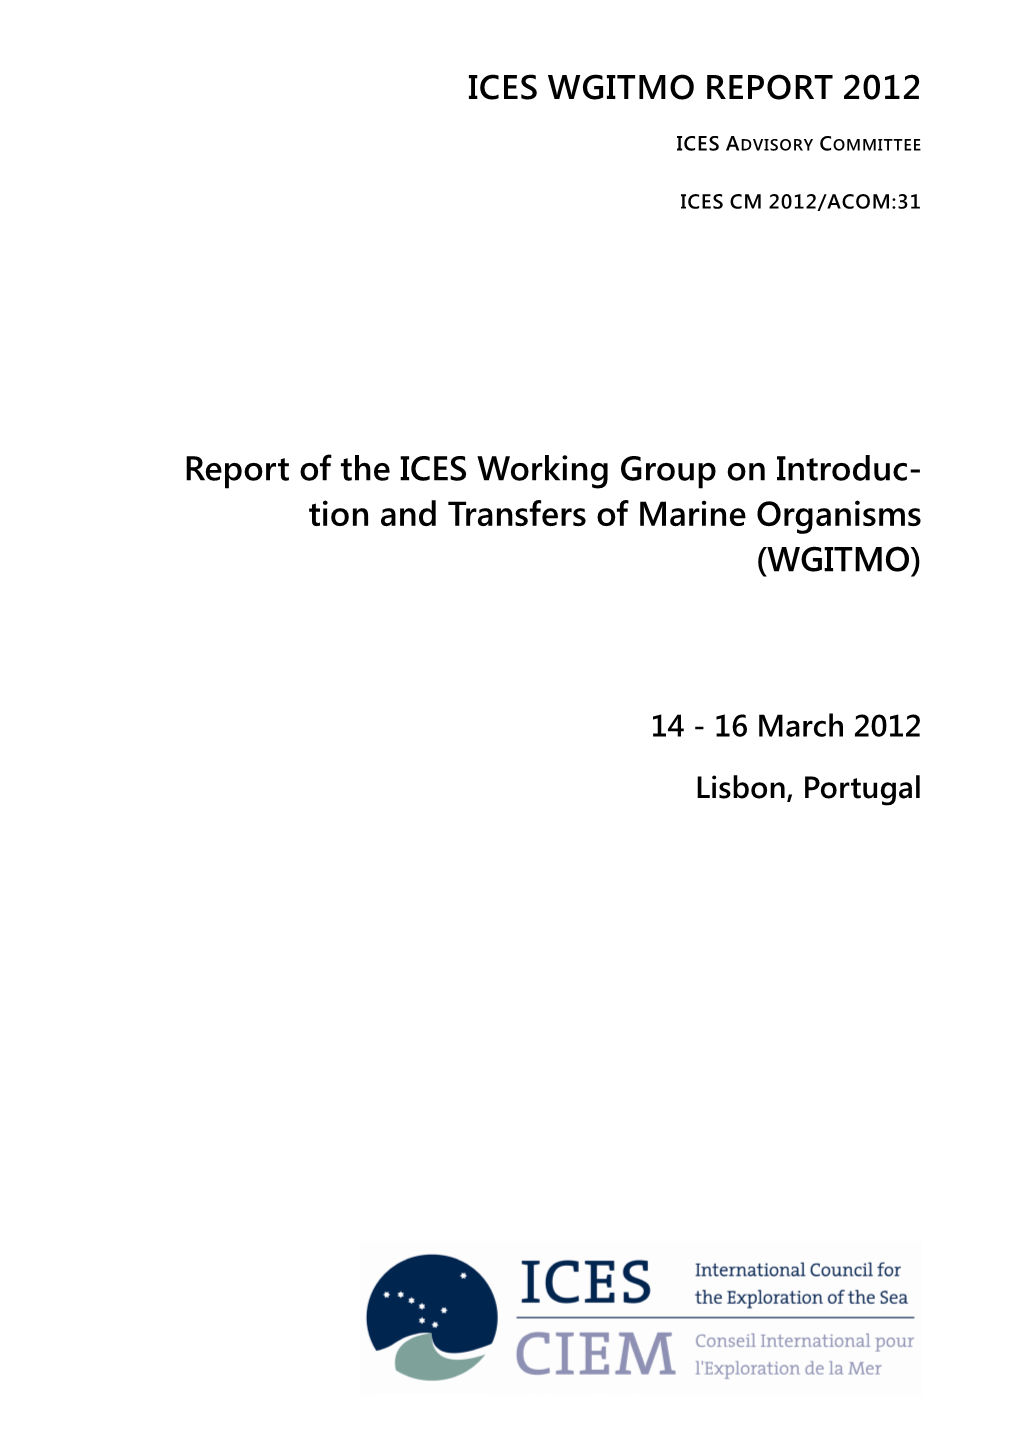 Wgitmo Report 2012